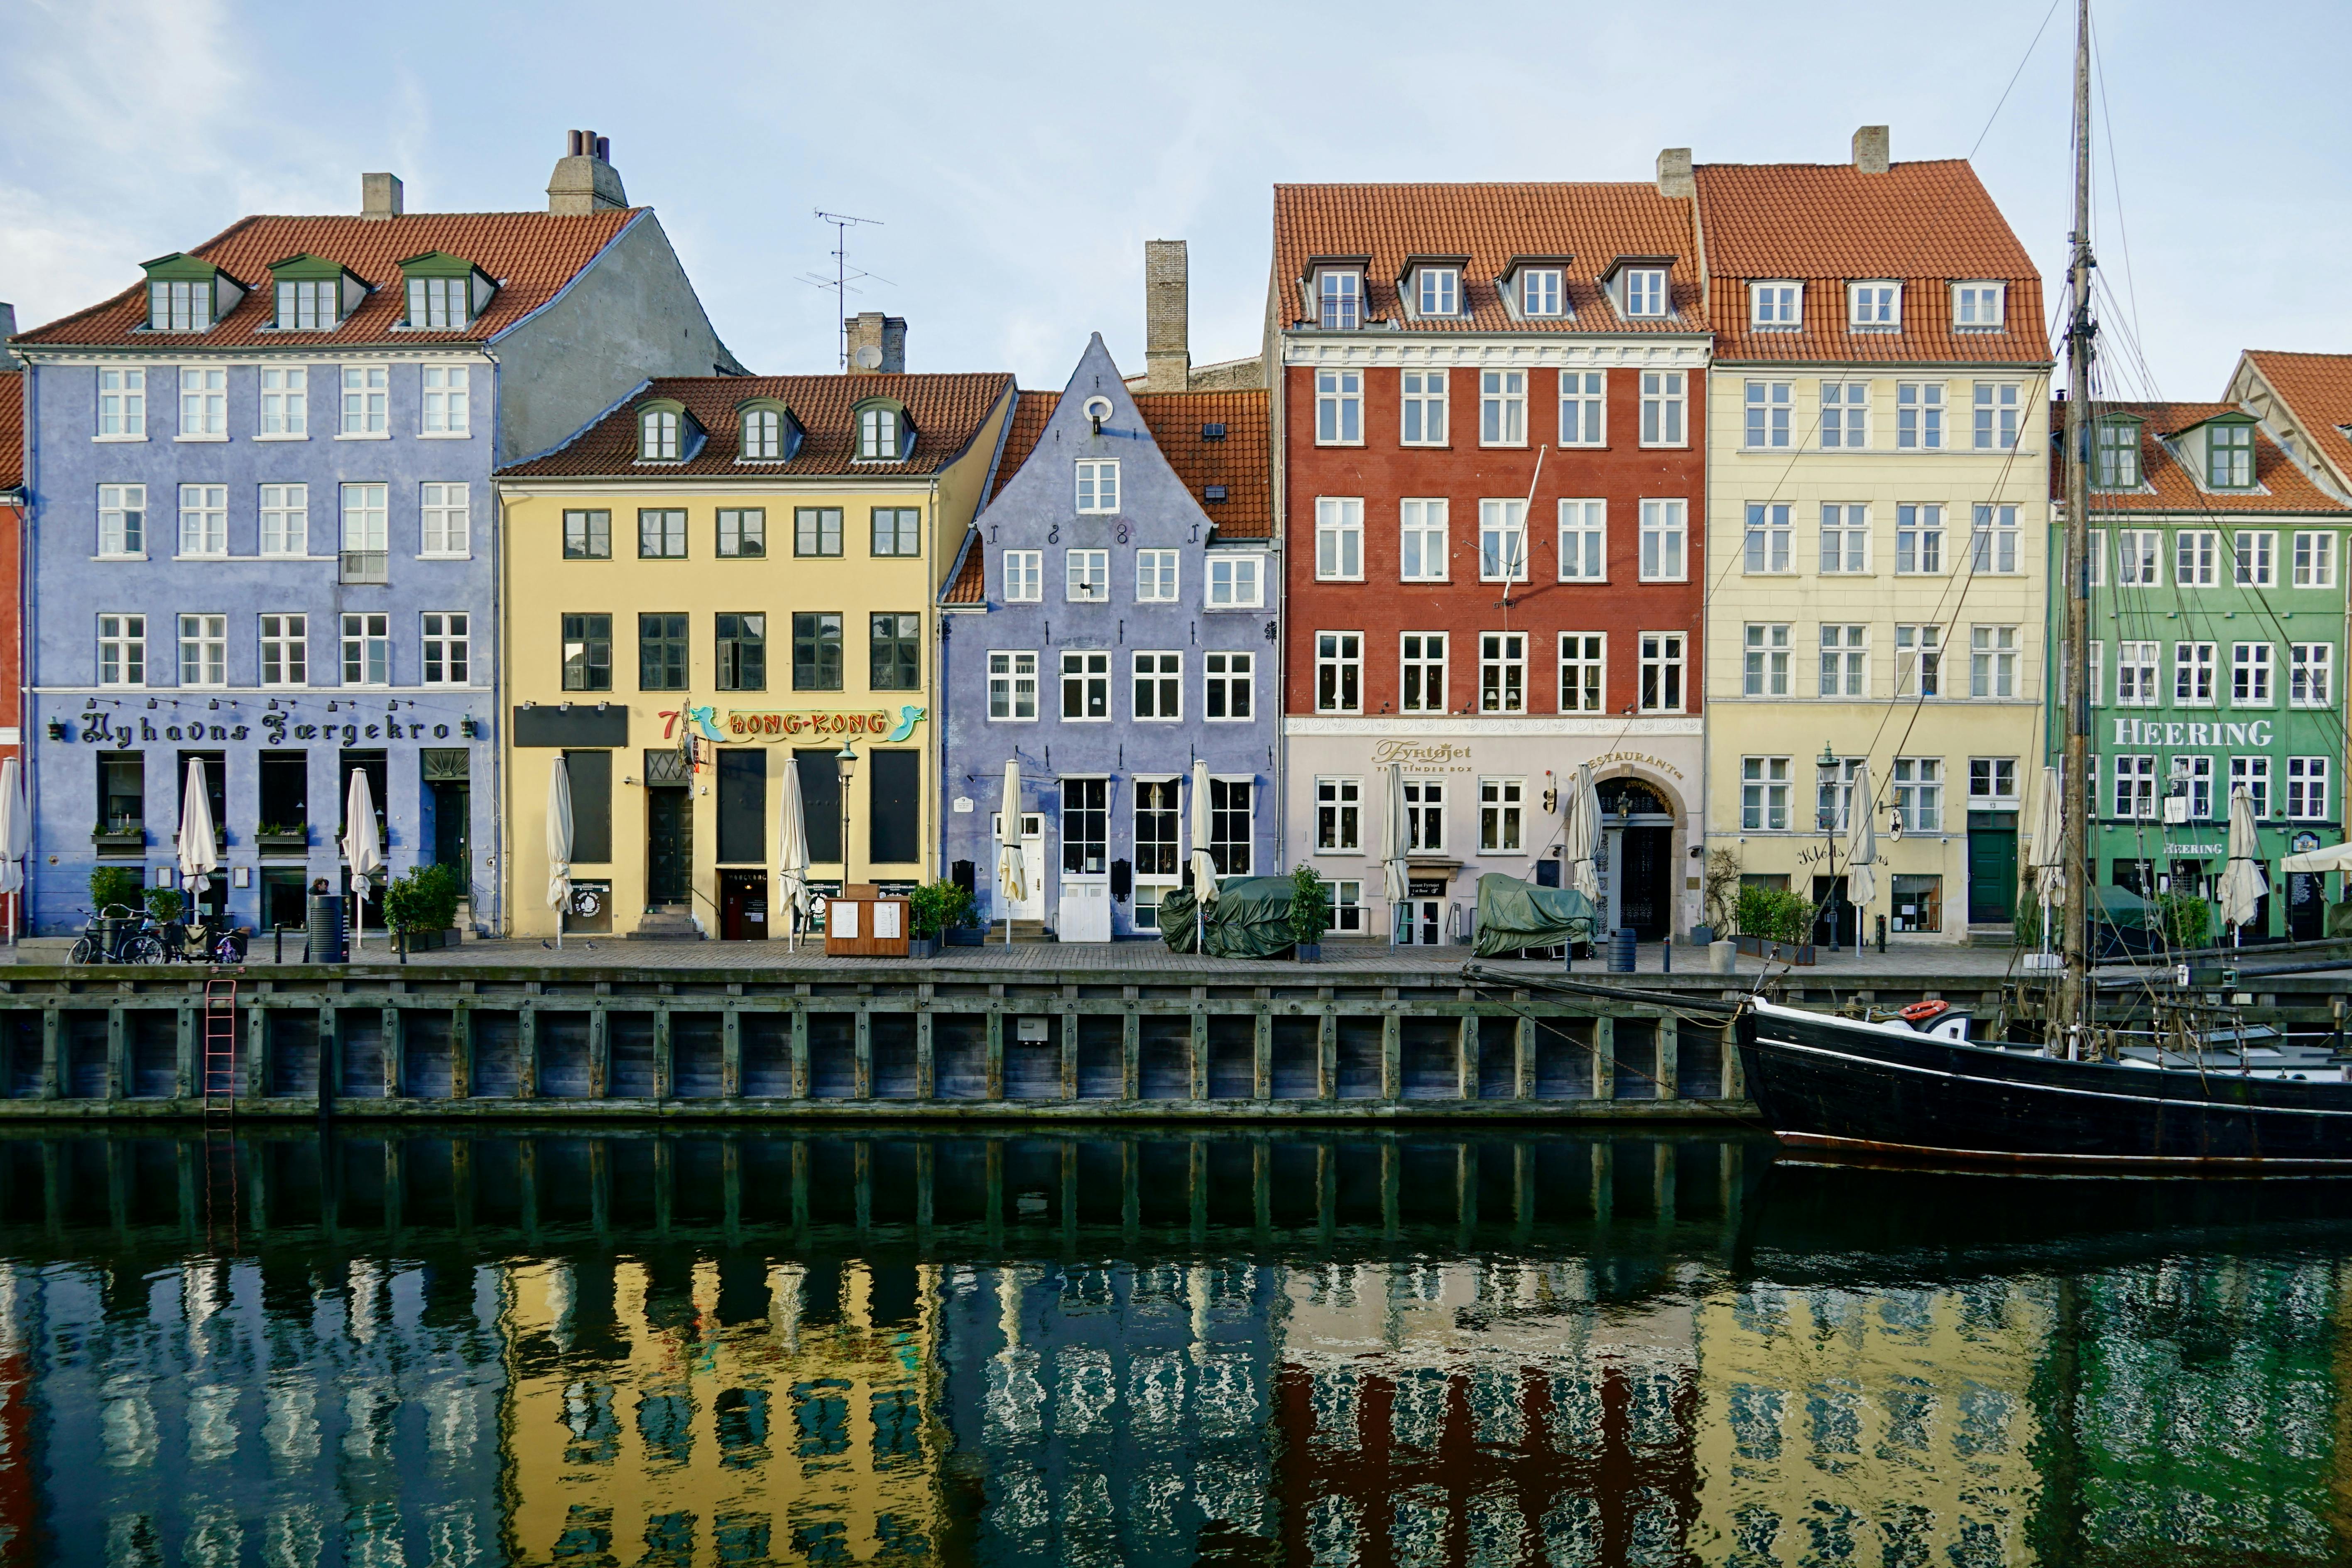 Løs mysteriet Røveriet i Nyhavn